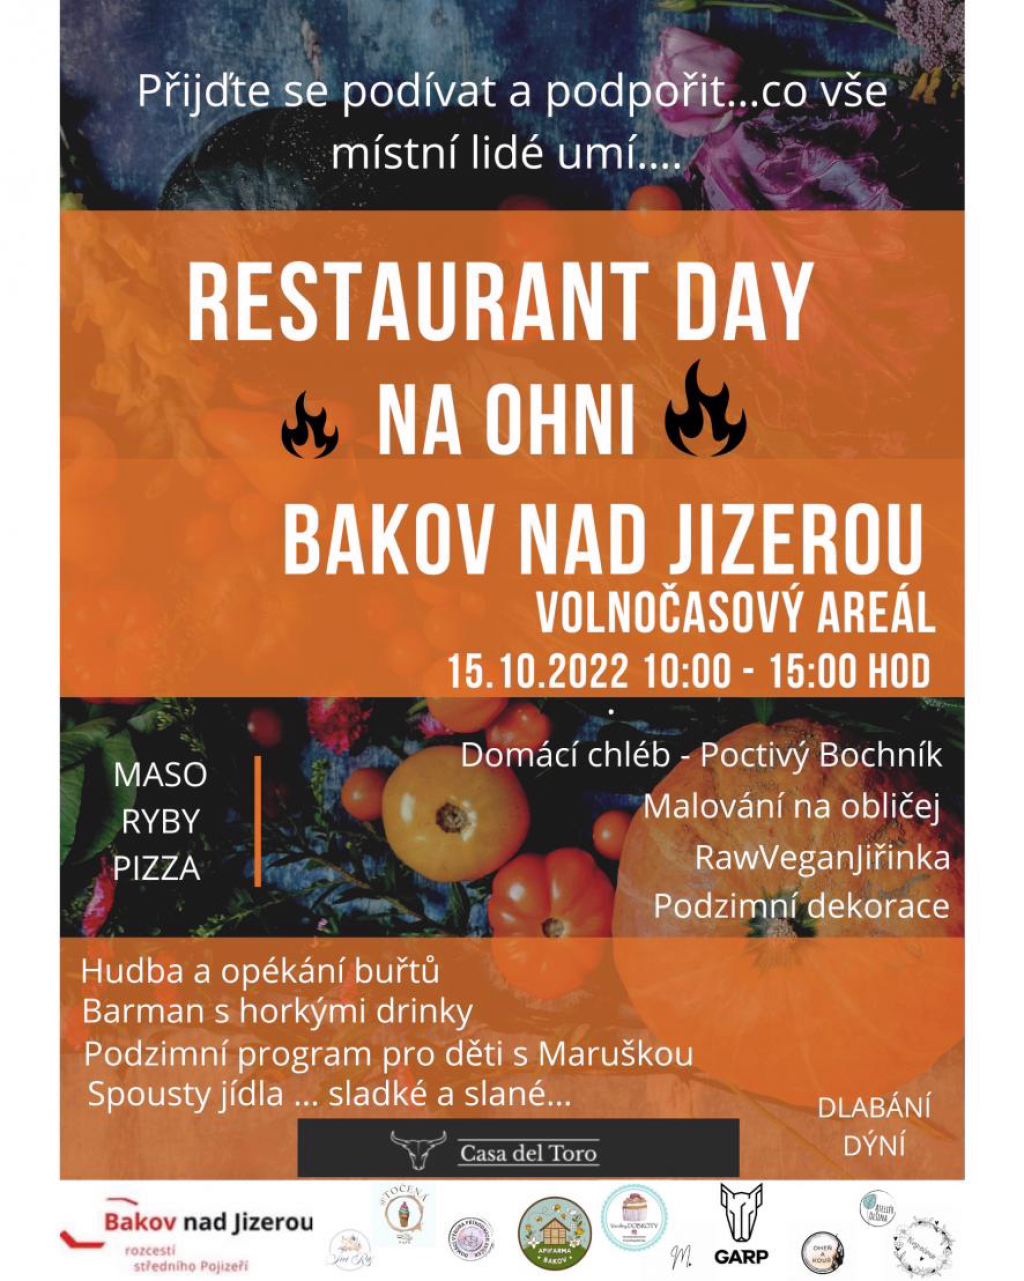 Volnočasový areál Bakov nad Jizerou uvítá v sobotu 15. října od 10 do 15 hodin Restaurant Day